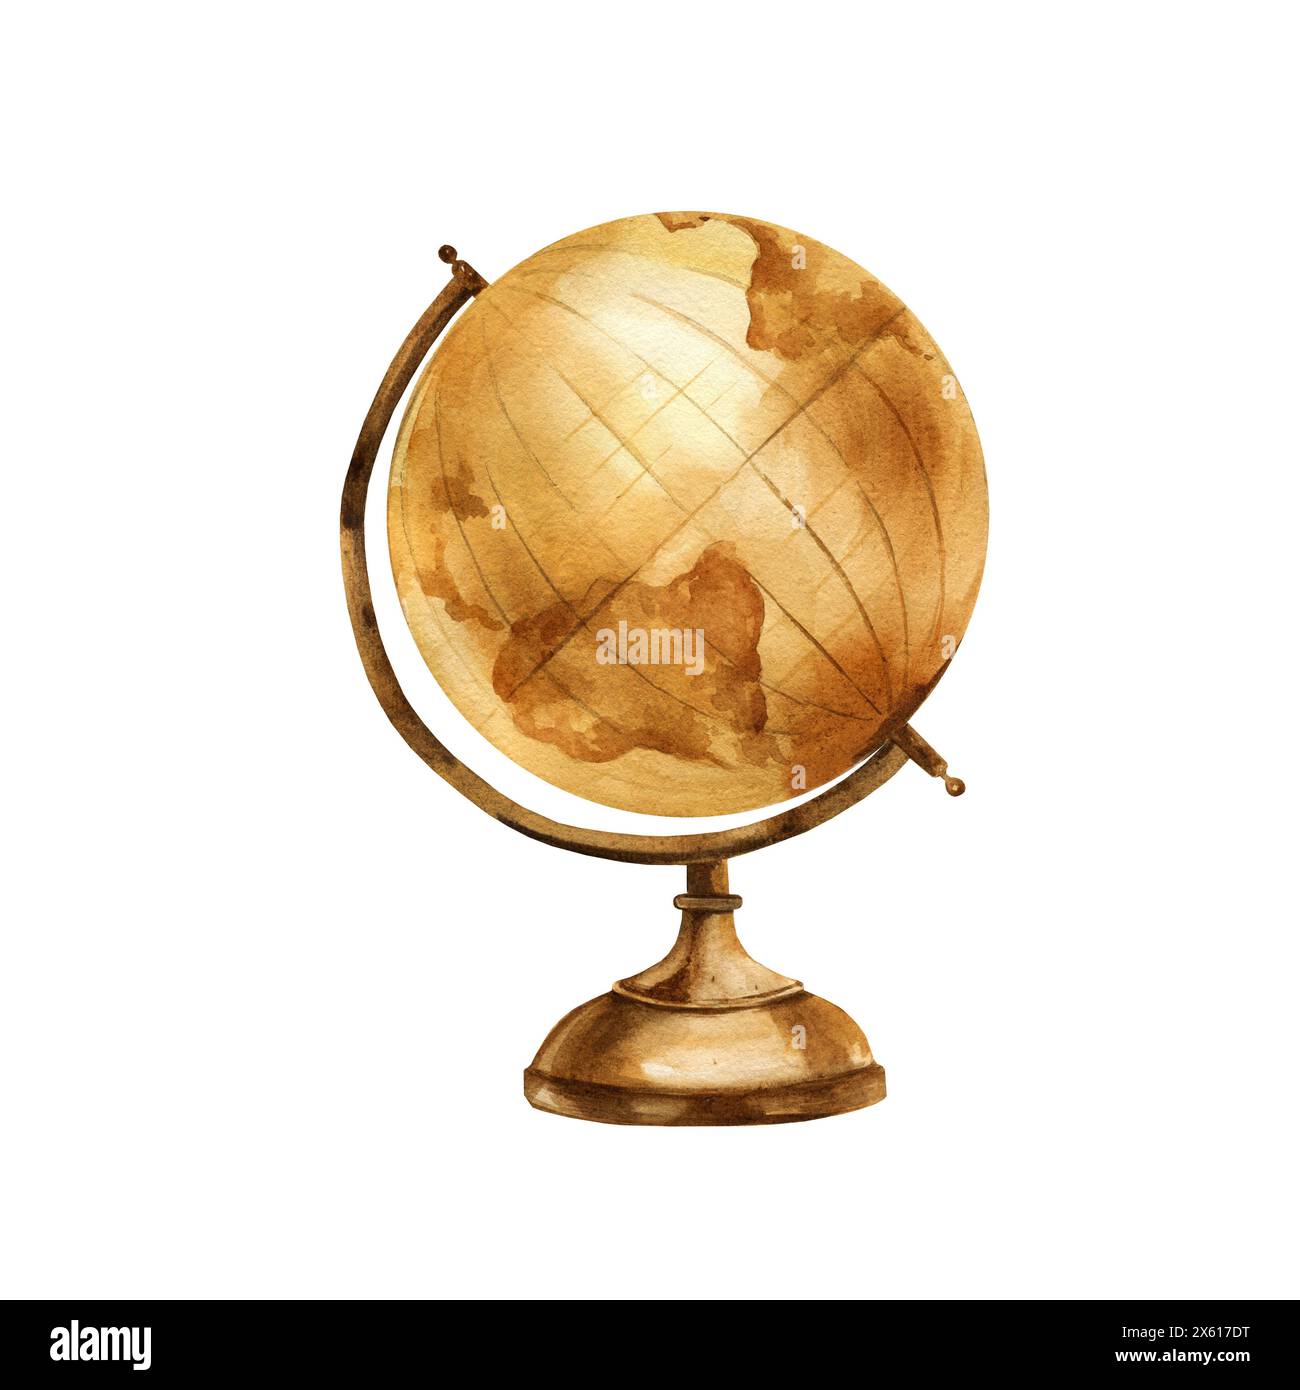 Vintage Globus, Aquarell alte Geschichte rund Globus, braune Kugel Grunge Geographie Globus der Erde, Studien- und Navigationsinstrument isoliert auf weißem Hintergrund Stockfoto